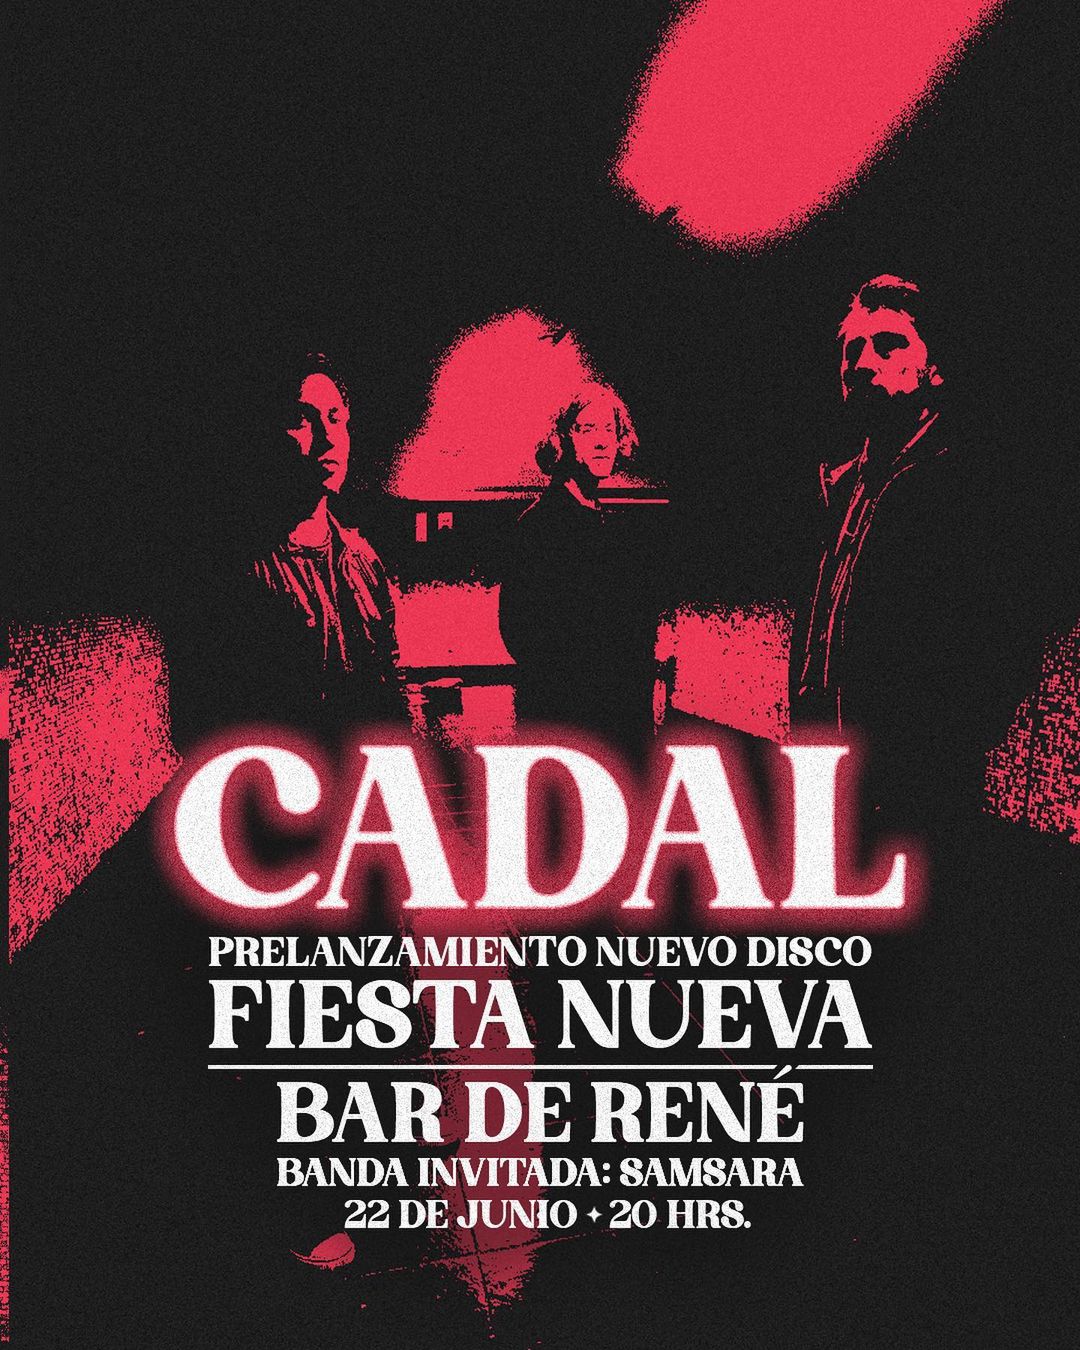 Cadal  (post punk, Chile) lanza "Fiesta Nueva", su primer disco, este jueves 22 de Junio en Bar de Rene